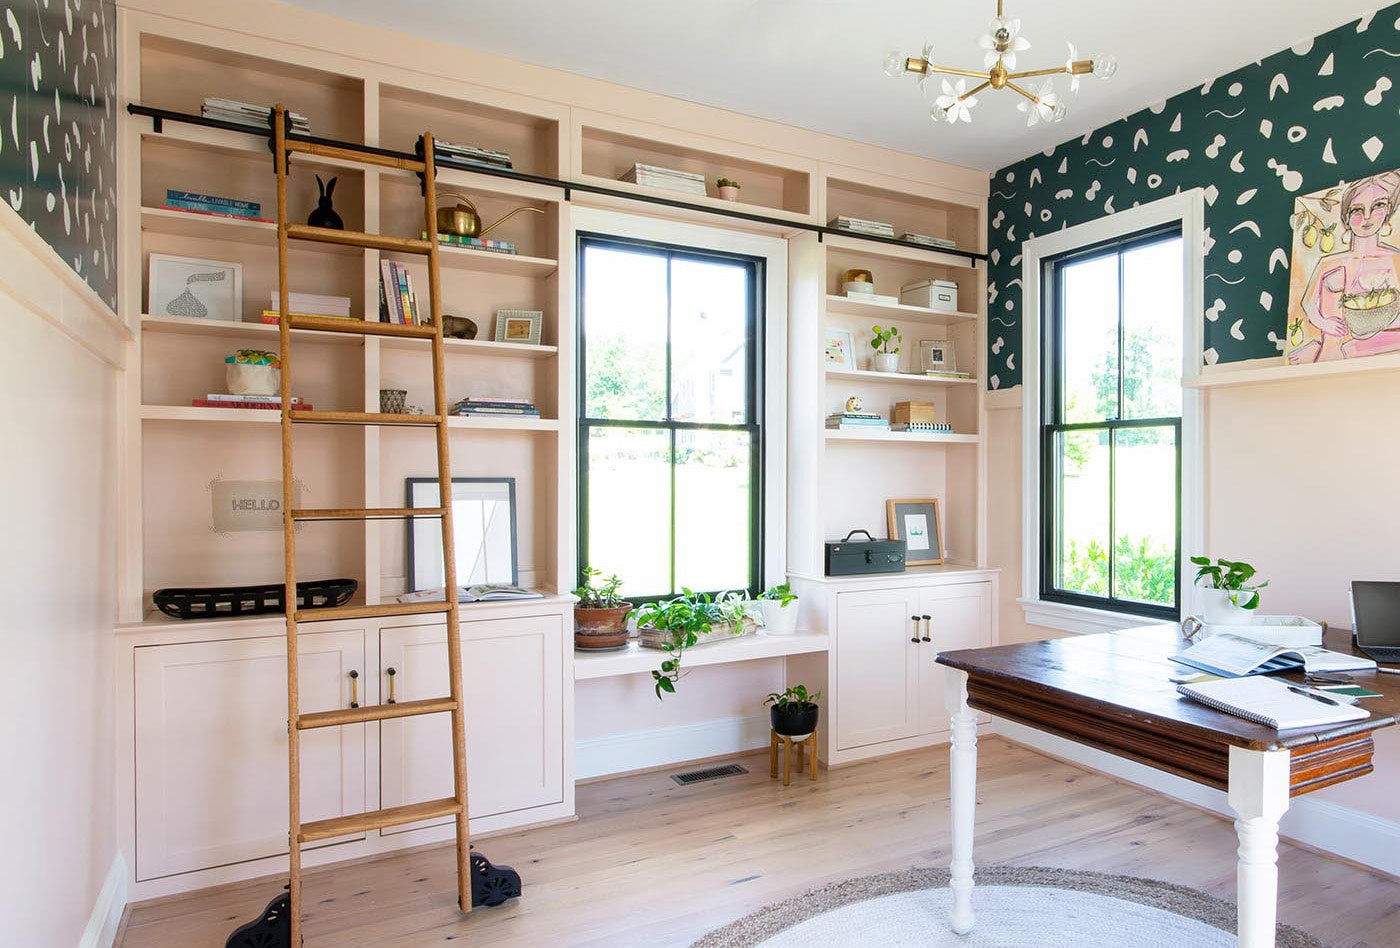 DIY Built-In Bookshelves For a Home Office